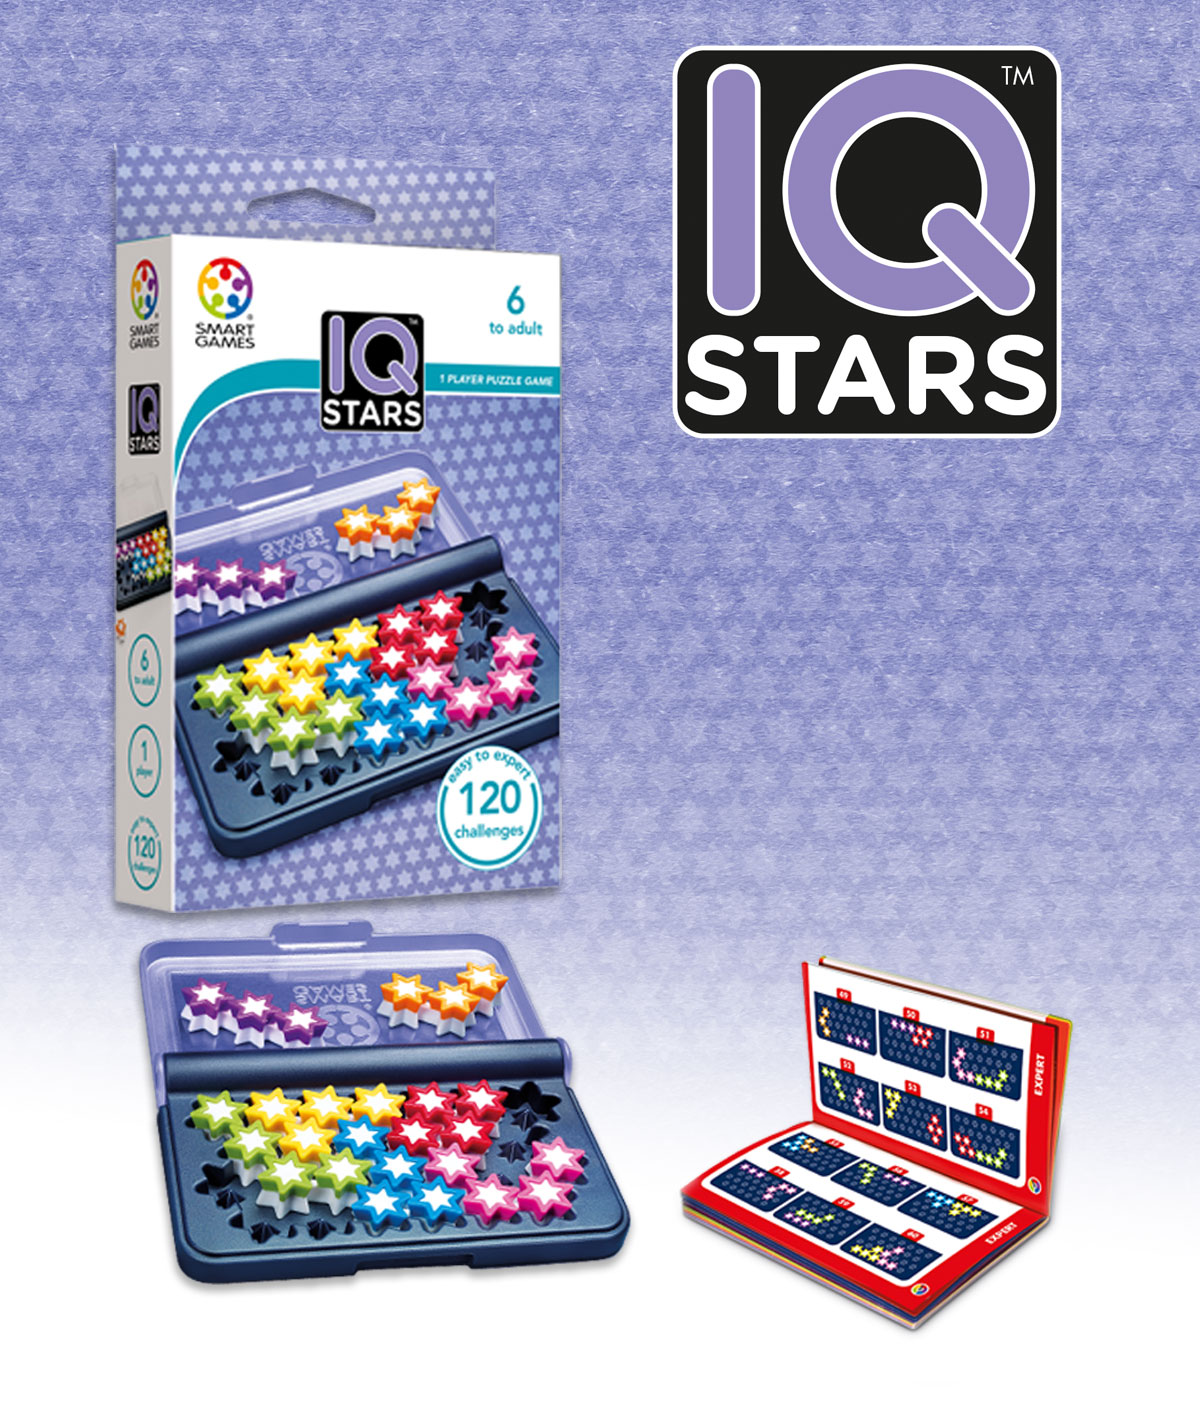 Smart Games IQ Stars Game Brand New 